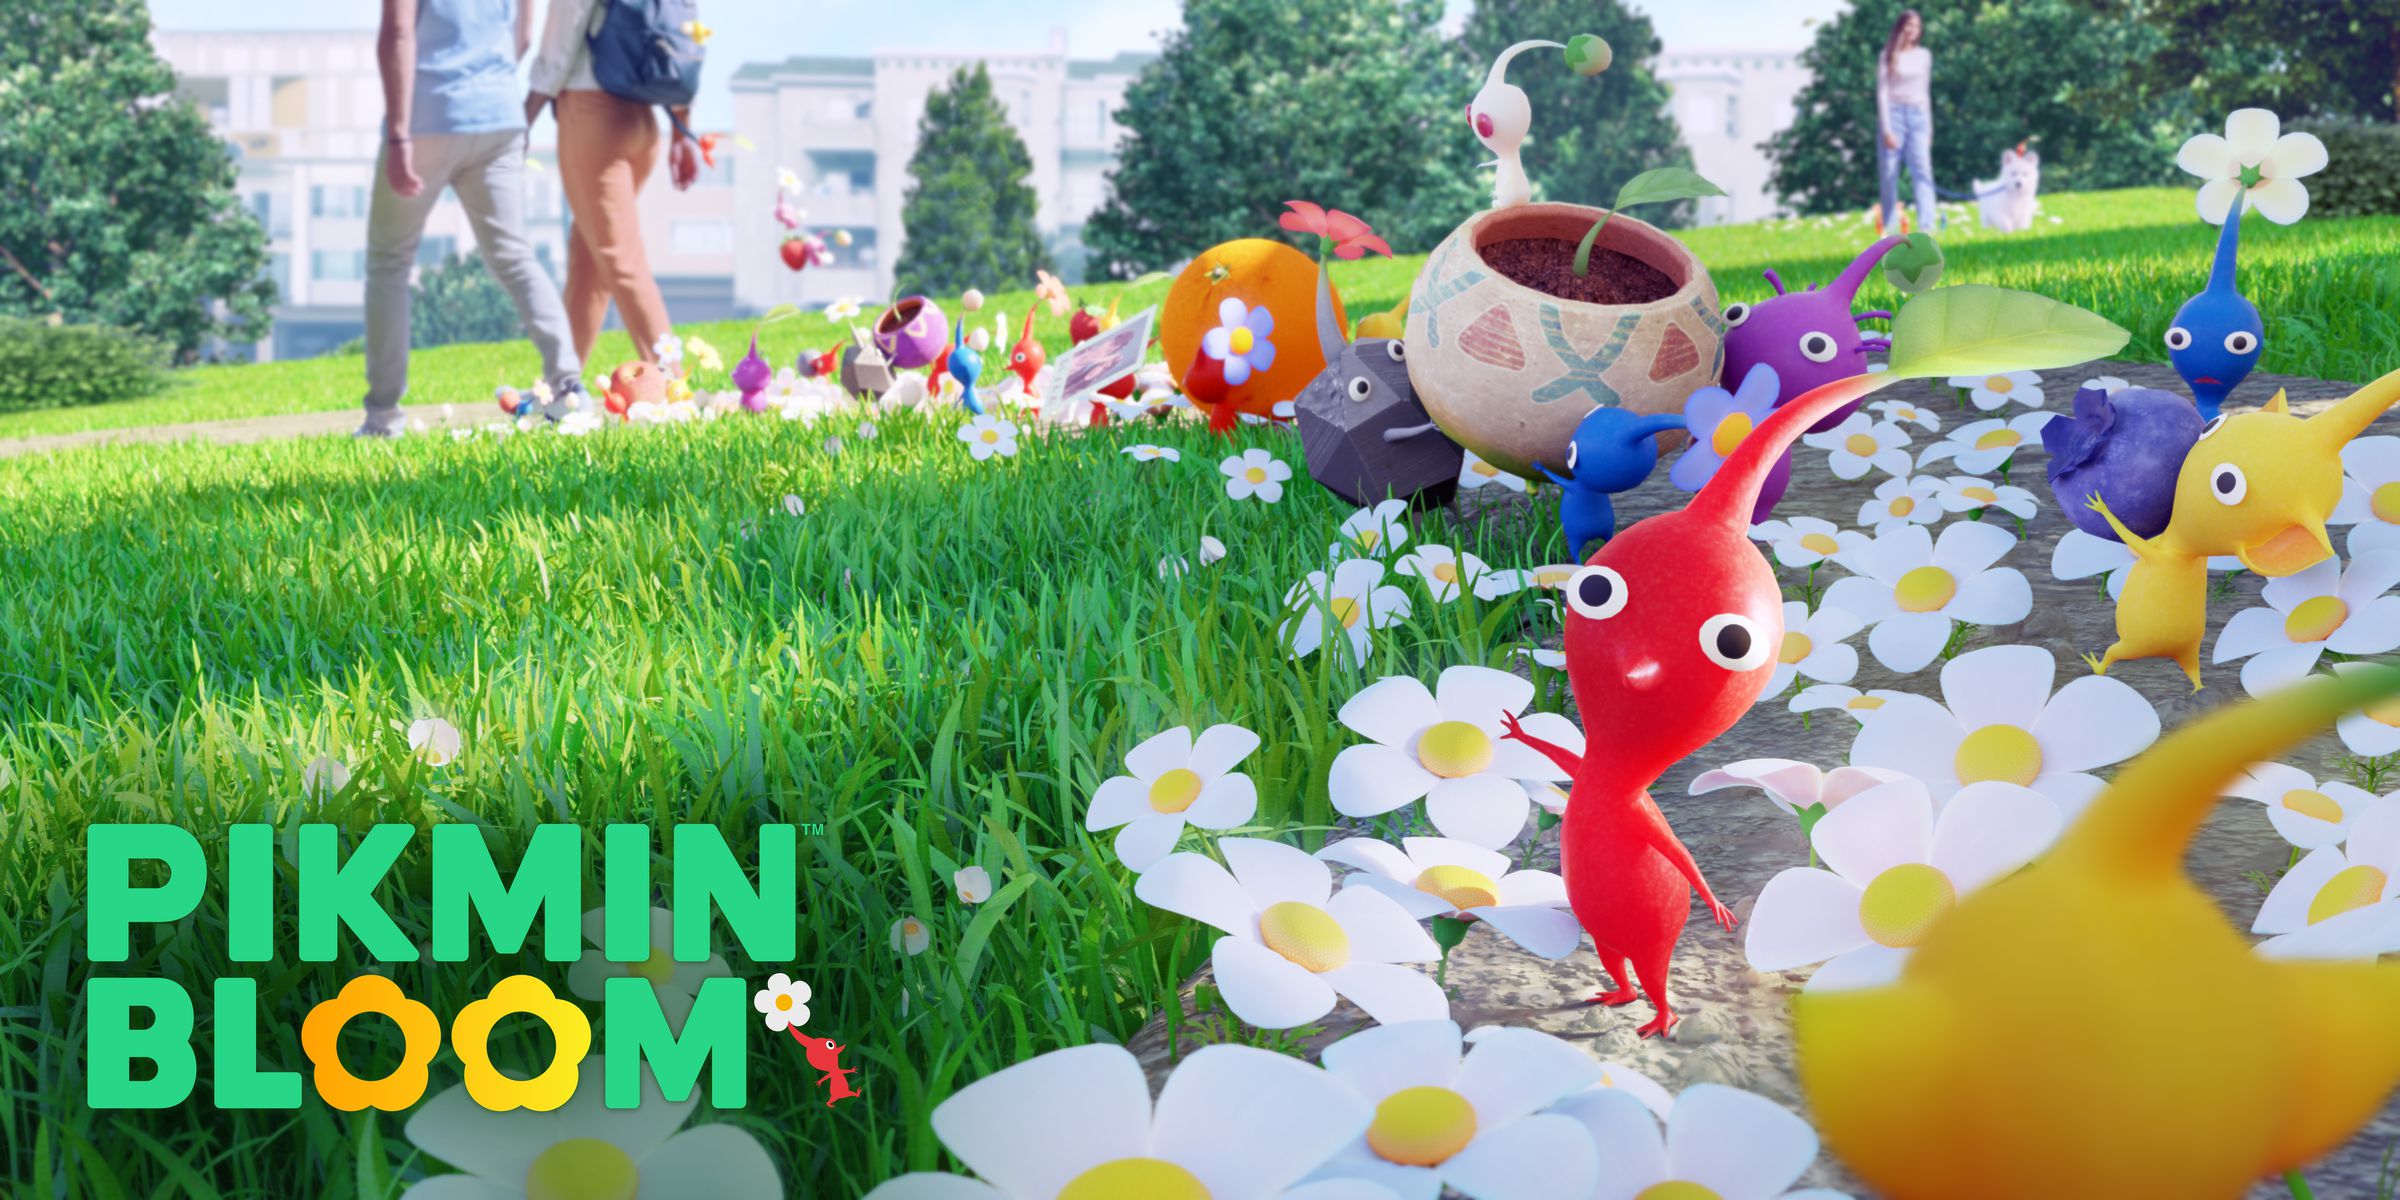 Capture d'écran de Pikmin Bloom : petites créatures colorées à grosse tête parmi une pelouse parsemée de marguerites.